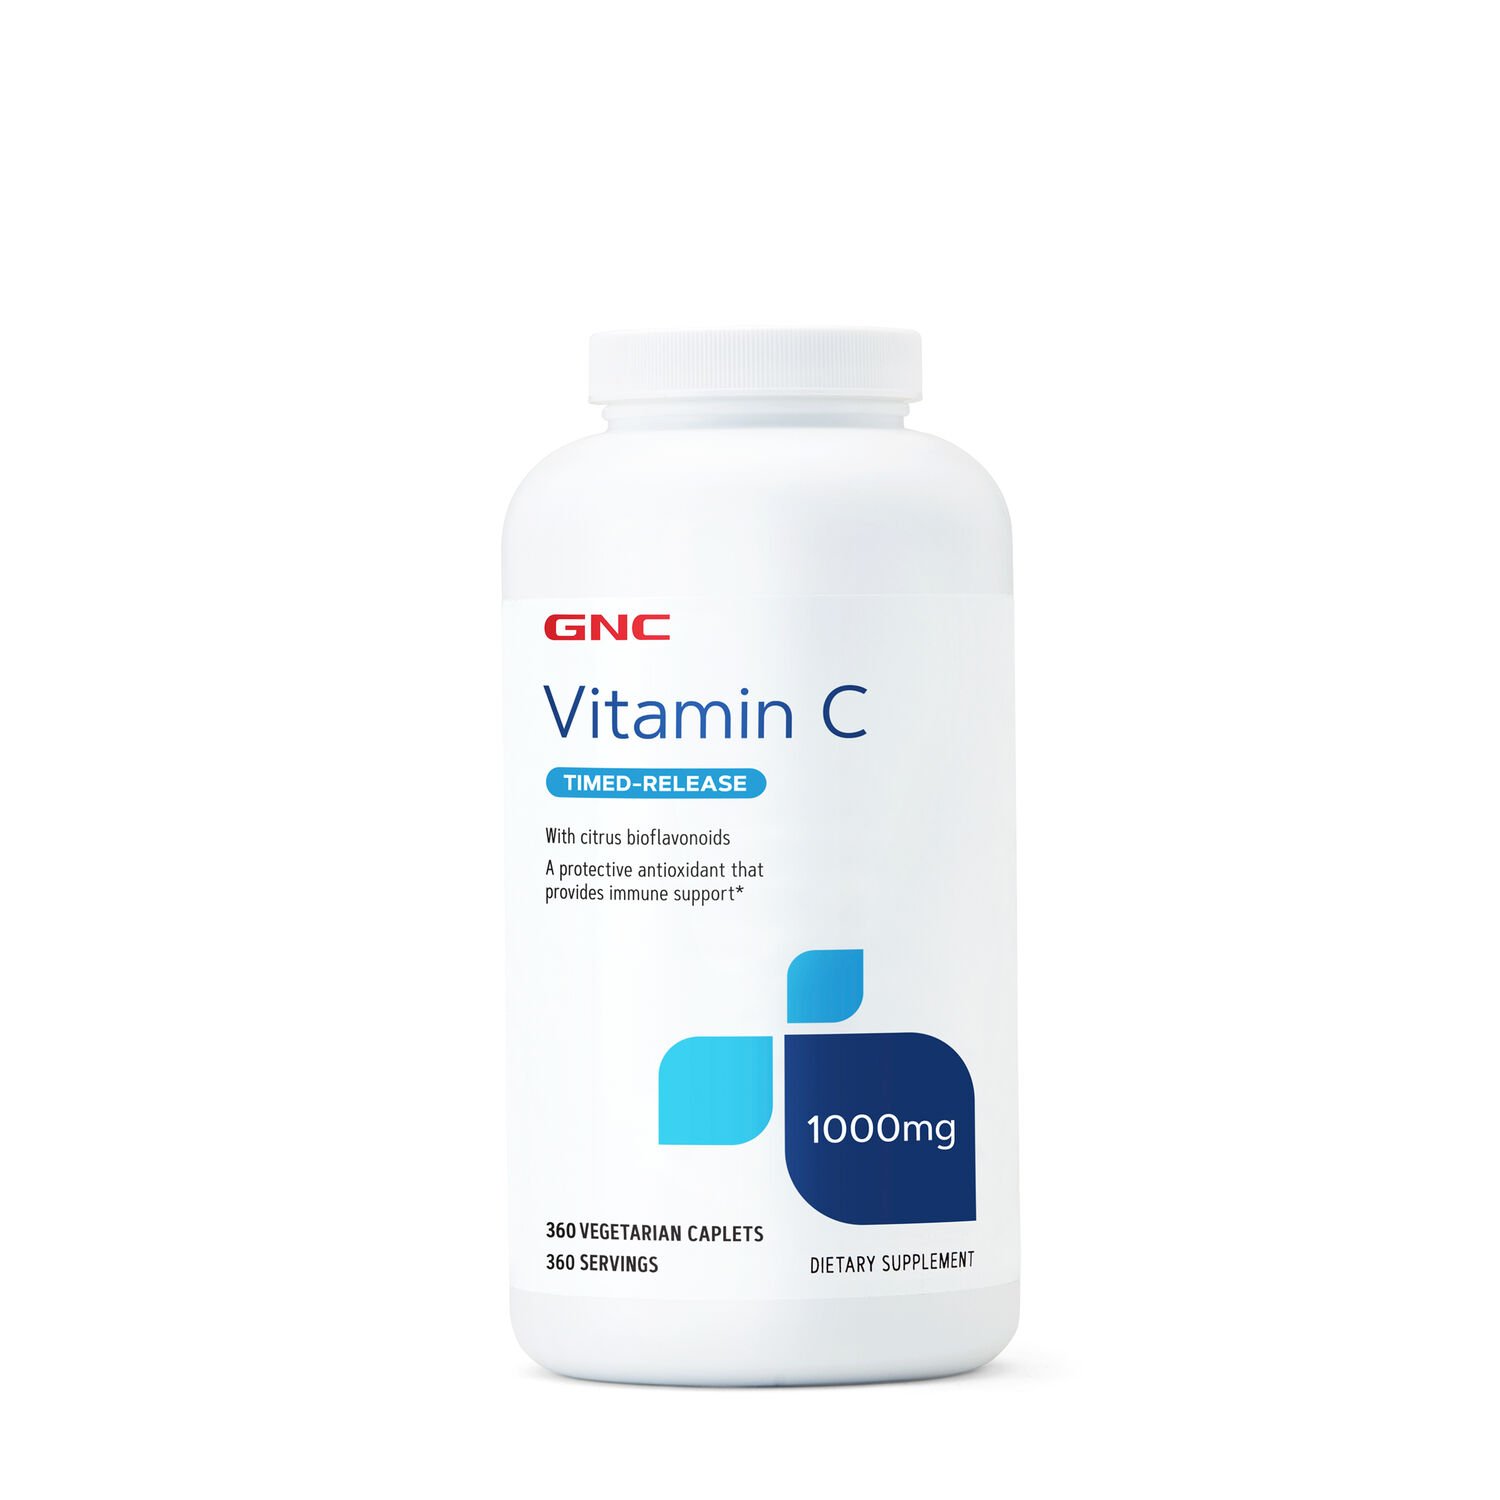 Витамины и минералы GNC Vitamin C 1000 mg Timed-Release, 360 вегакапсул СРОК 08.23,  мл, GNC. Витамины и минералы. Поддержание здоровья Укрепление иммунитета 